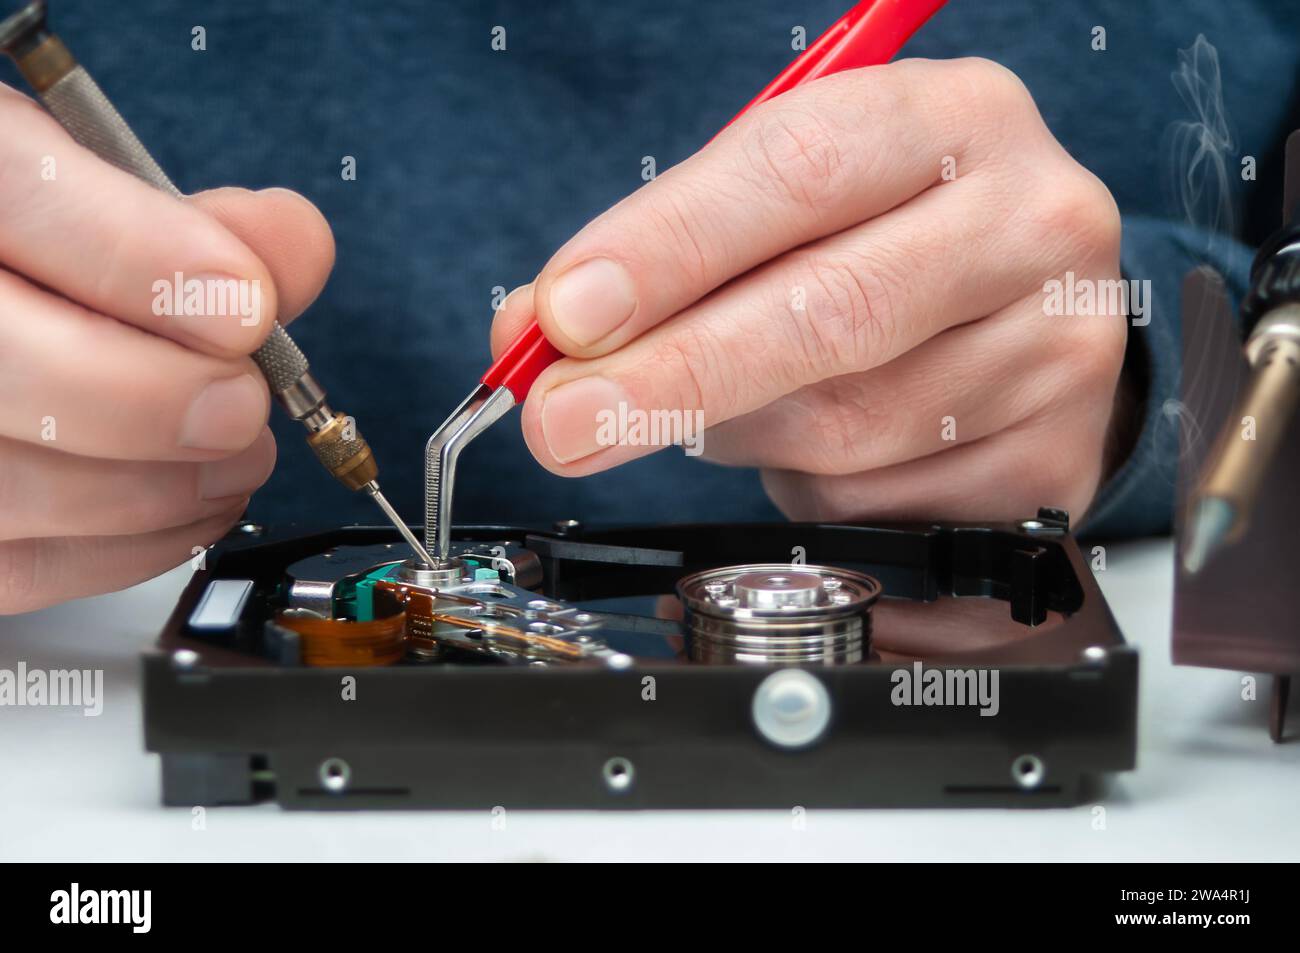 Primo piano delle mani di un tecnico in un'officina. Il tecnico utilizza pinzette e un cacciavite per riparare e mantenere un disco rigido. Foto Stock